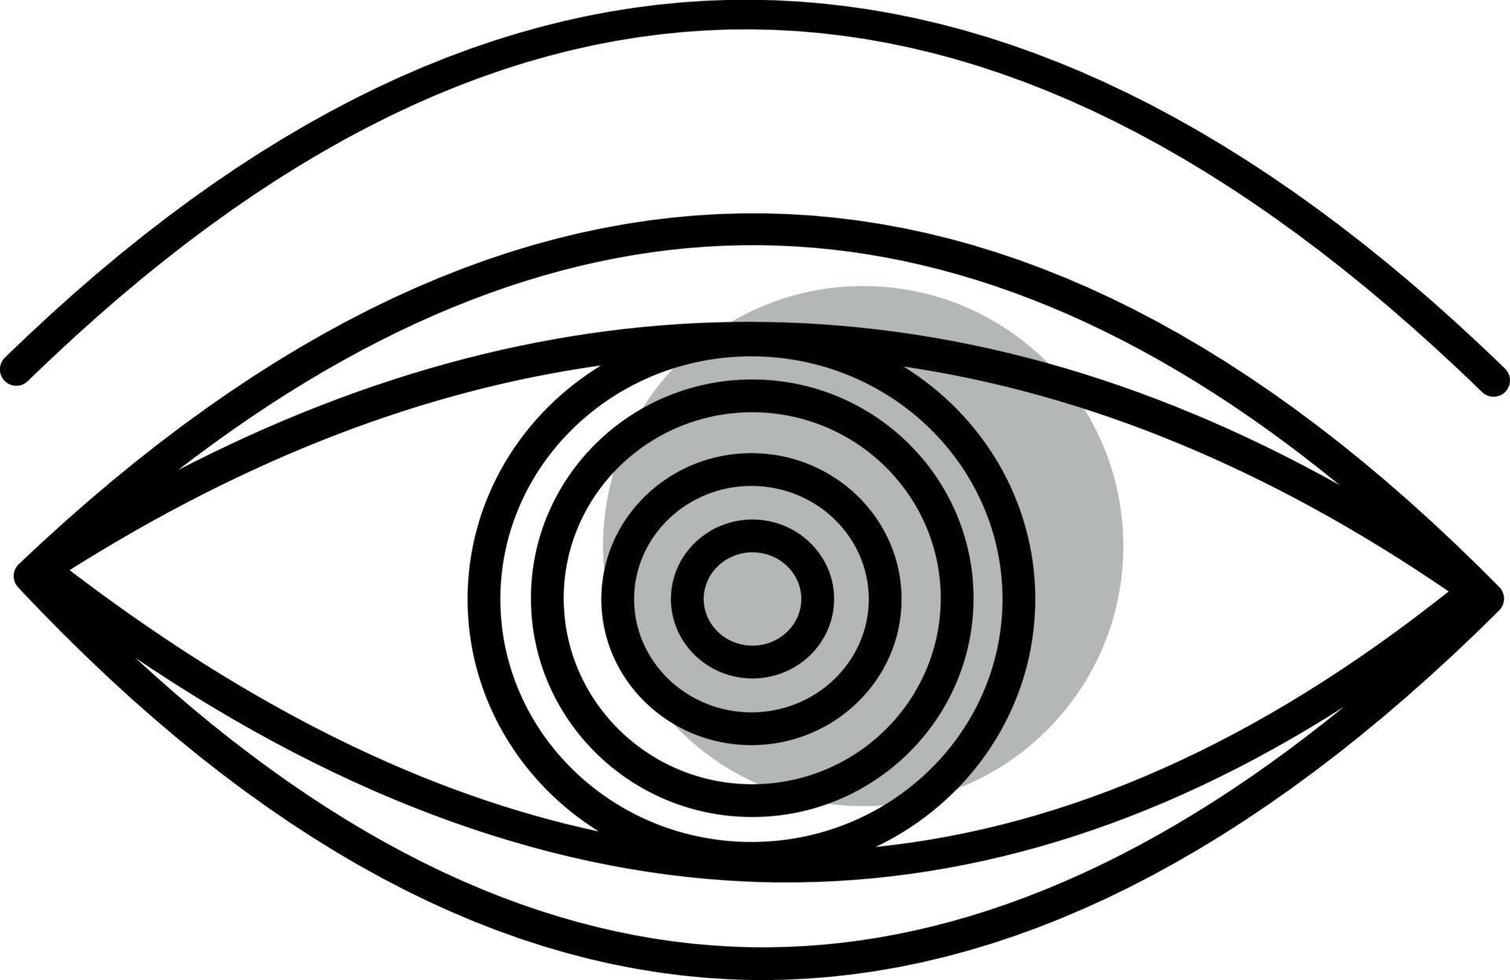 mytologi öga, illustration, vektor på en vit bakgrund.